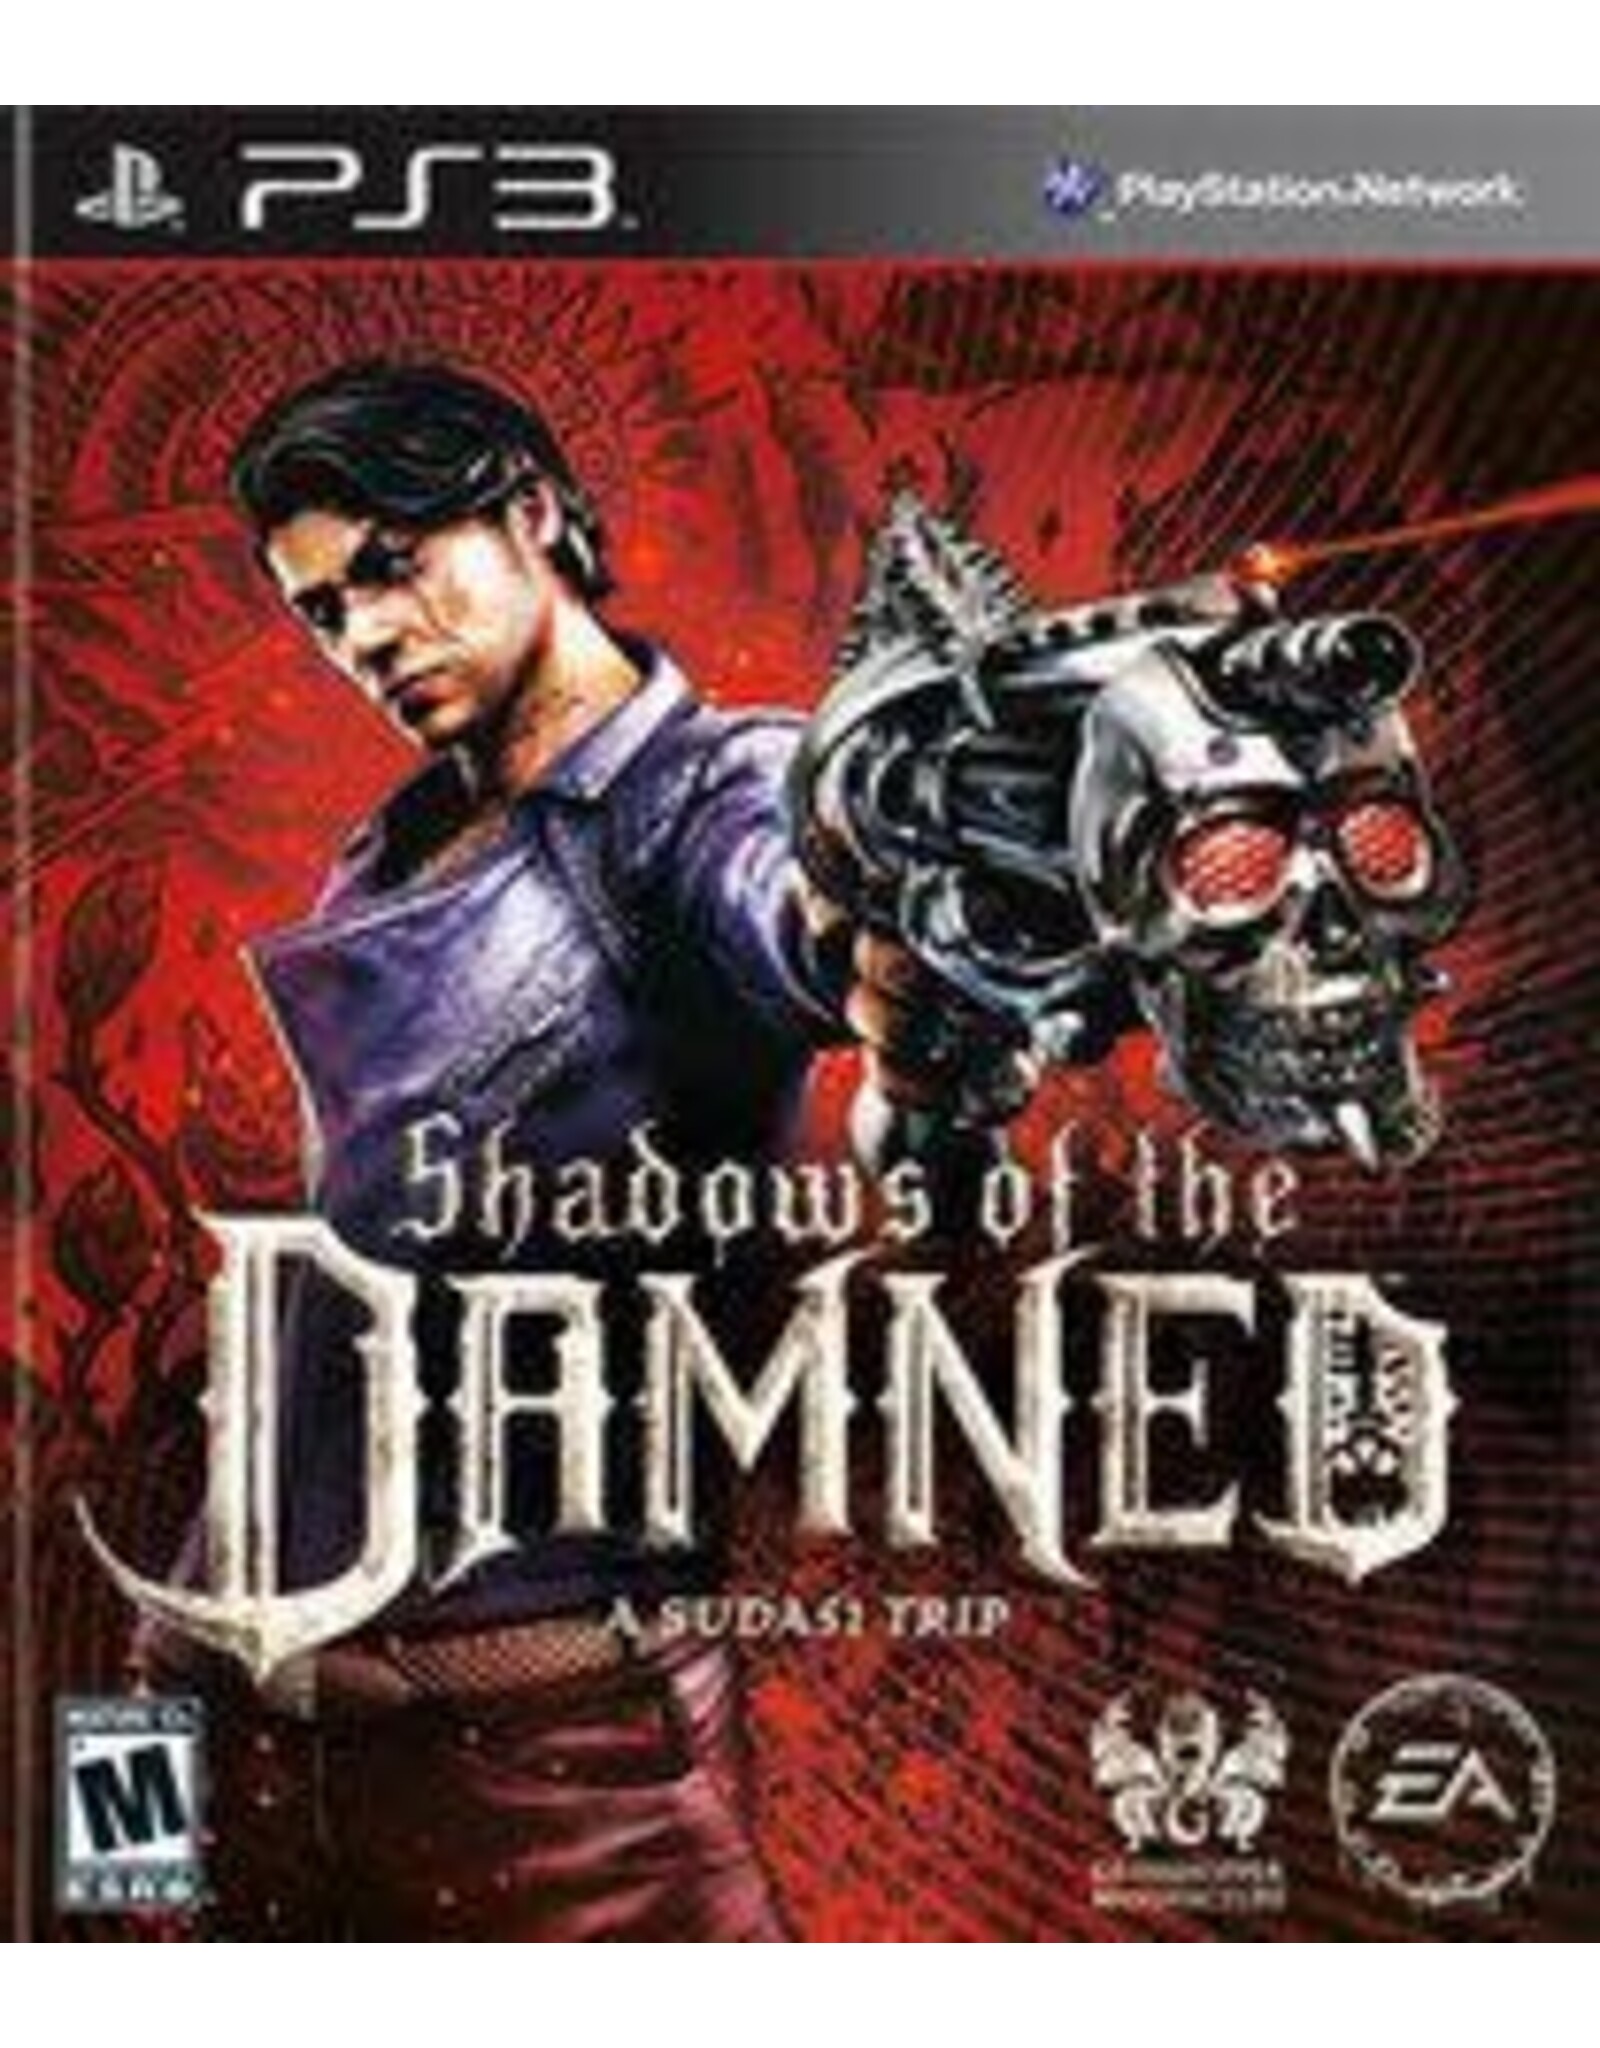 Playstation 3 Shadows of the Damned (CiB)